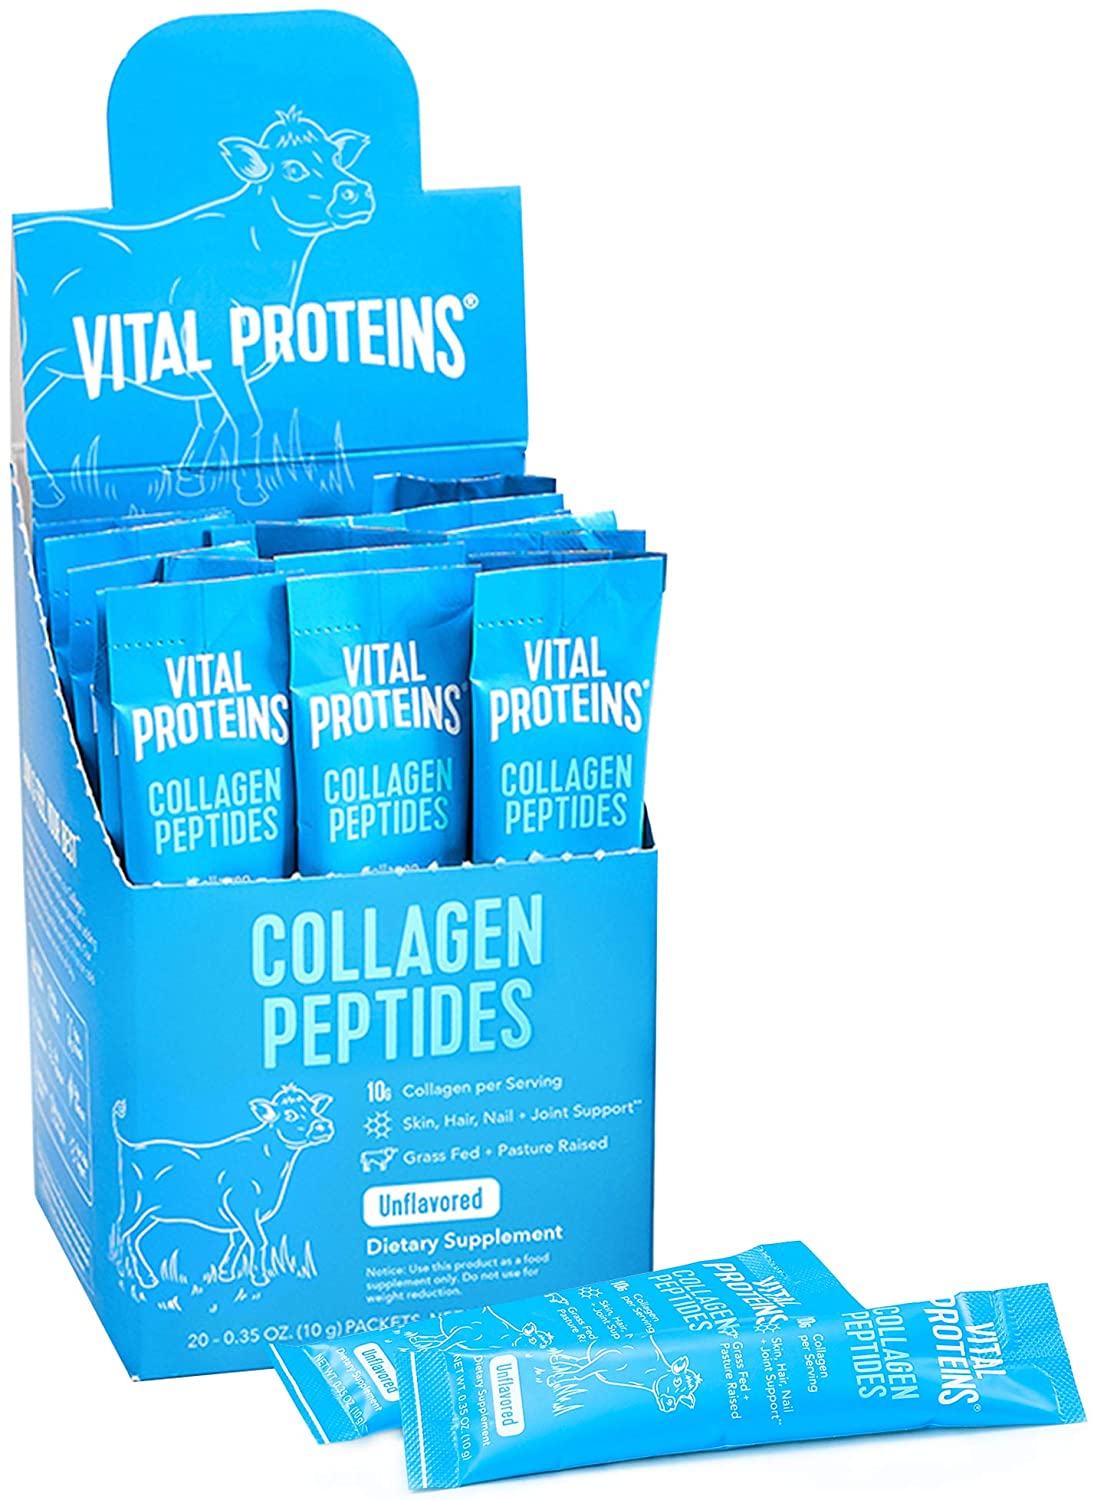 Vital Proteins Collagen Peptides Powder Supplement - 20 Paket-0